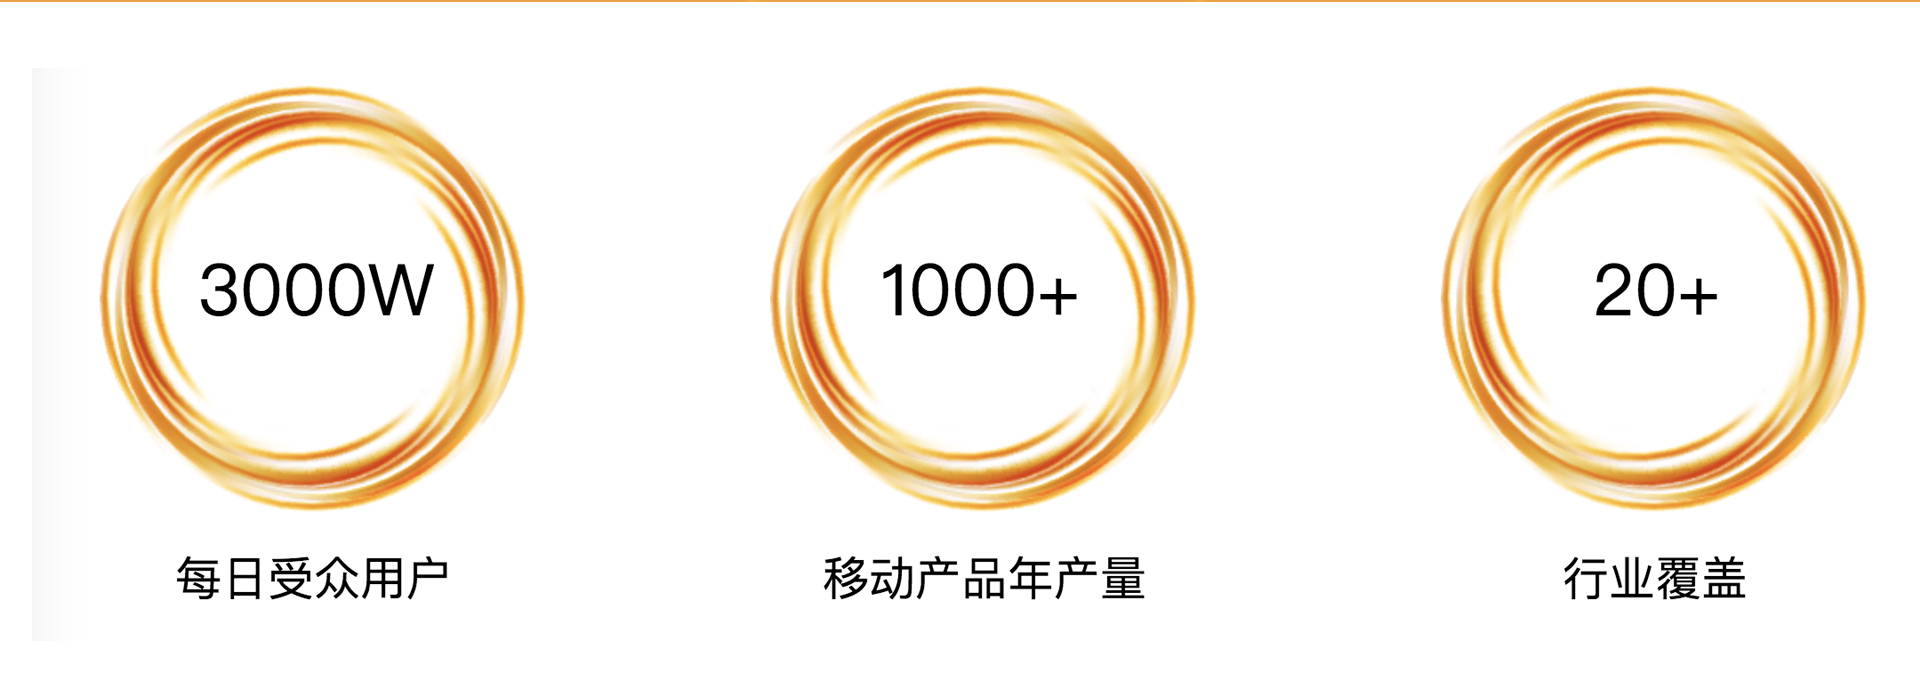 1023修改店铺-上海皇家网络科技有限公司_04.jpg